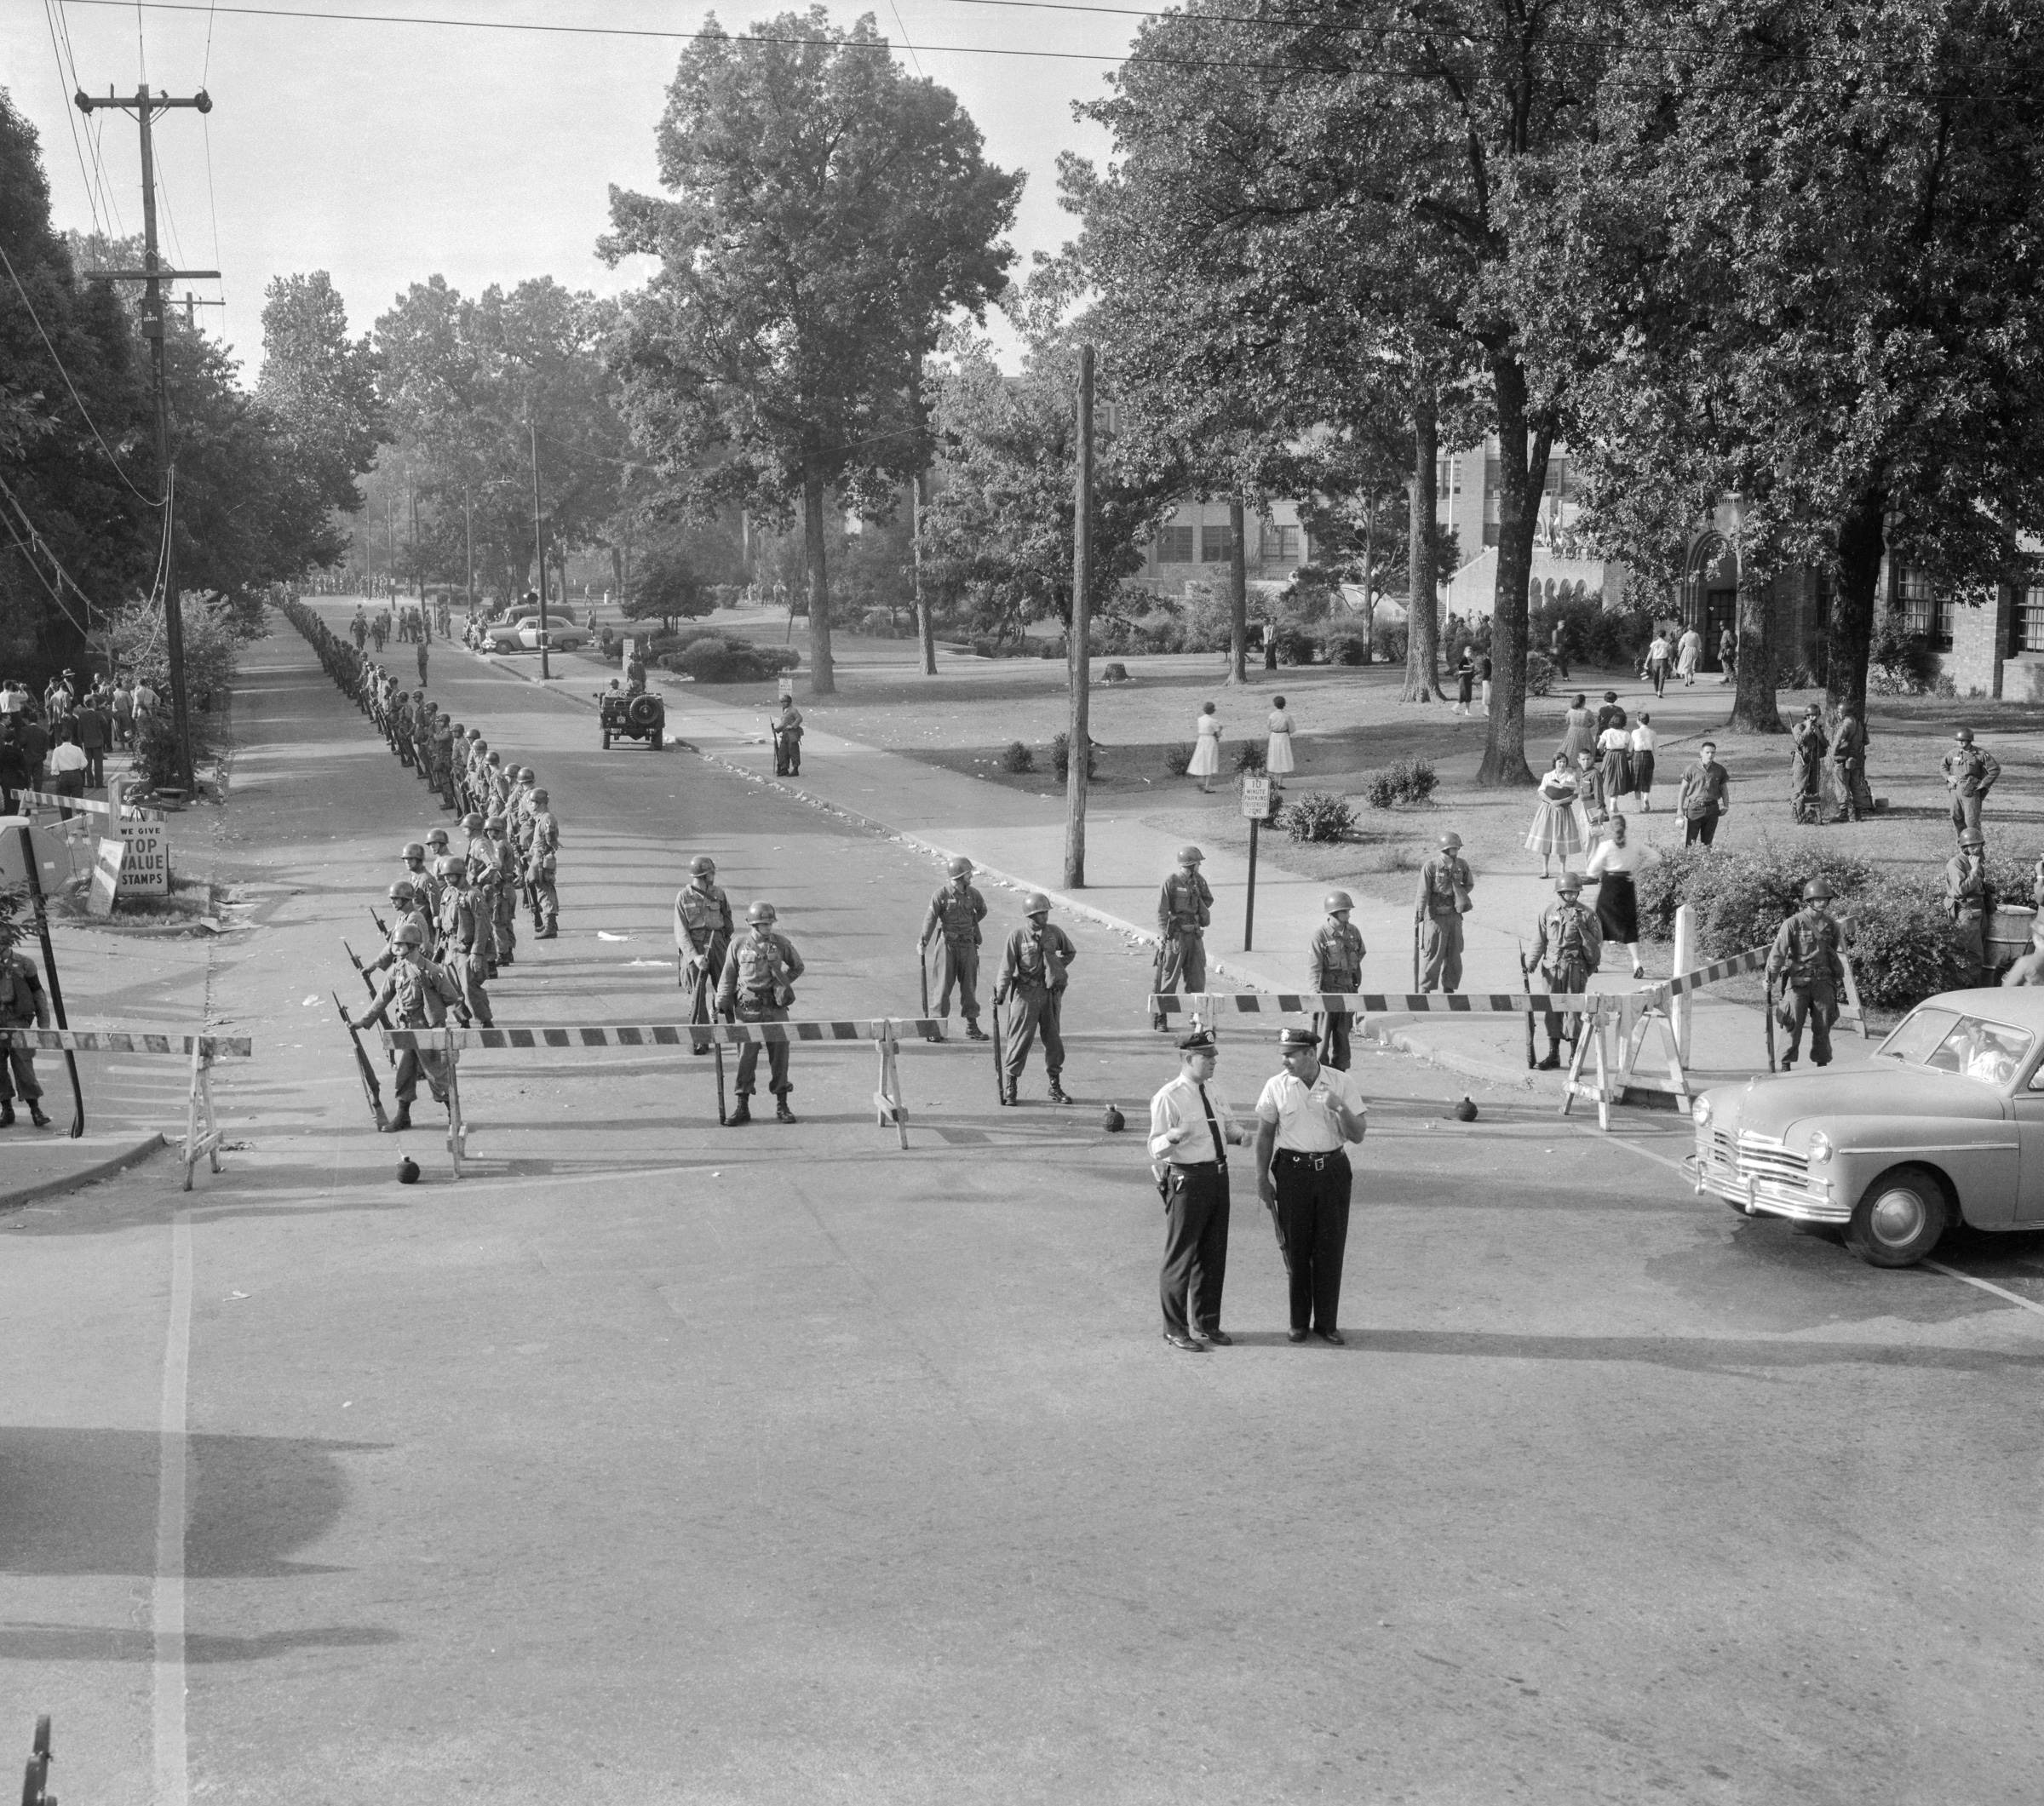 24 сентября 1957 года в город были введены 1,2 тыс. солдат 101-й воздушно-десантной дивизии из Форт-Кэмпбелла, штат Кентукки.&nbsp;Десантники сопровождали детей на пути в школу и охраняли их в коридорах.
